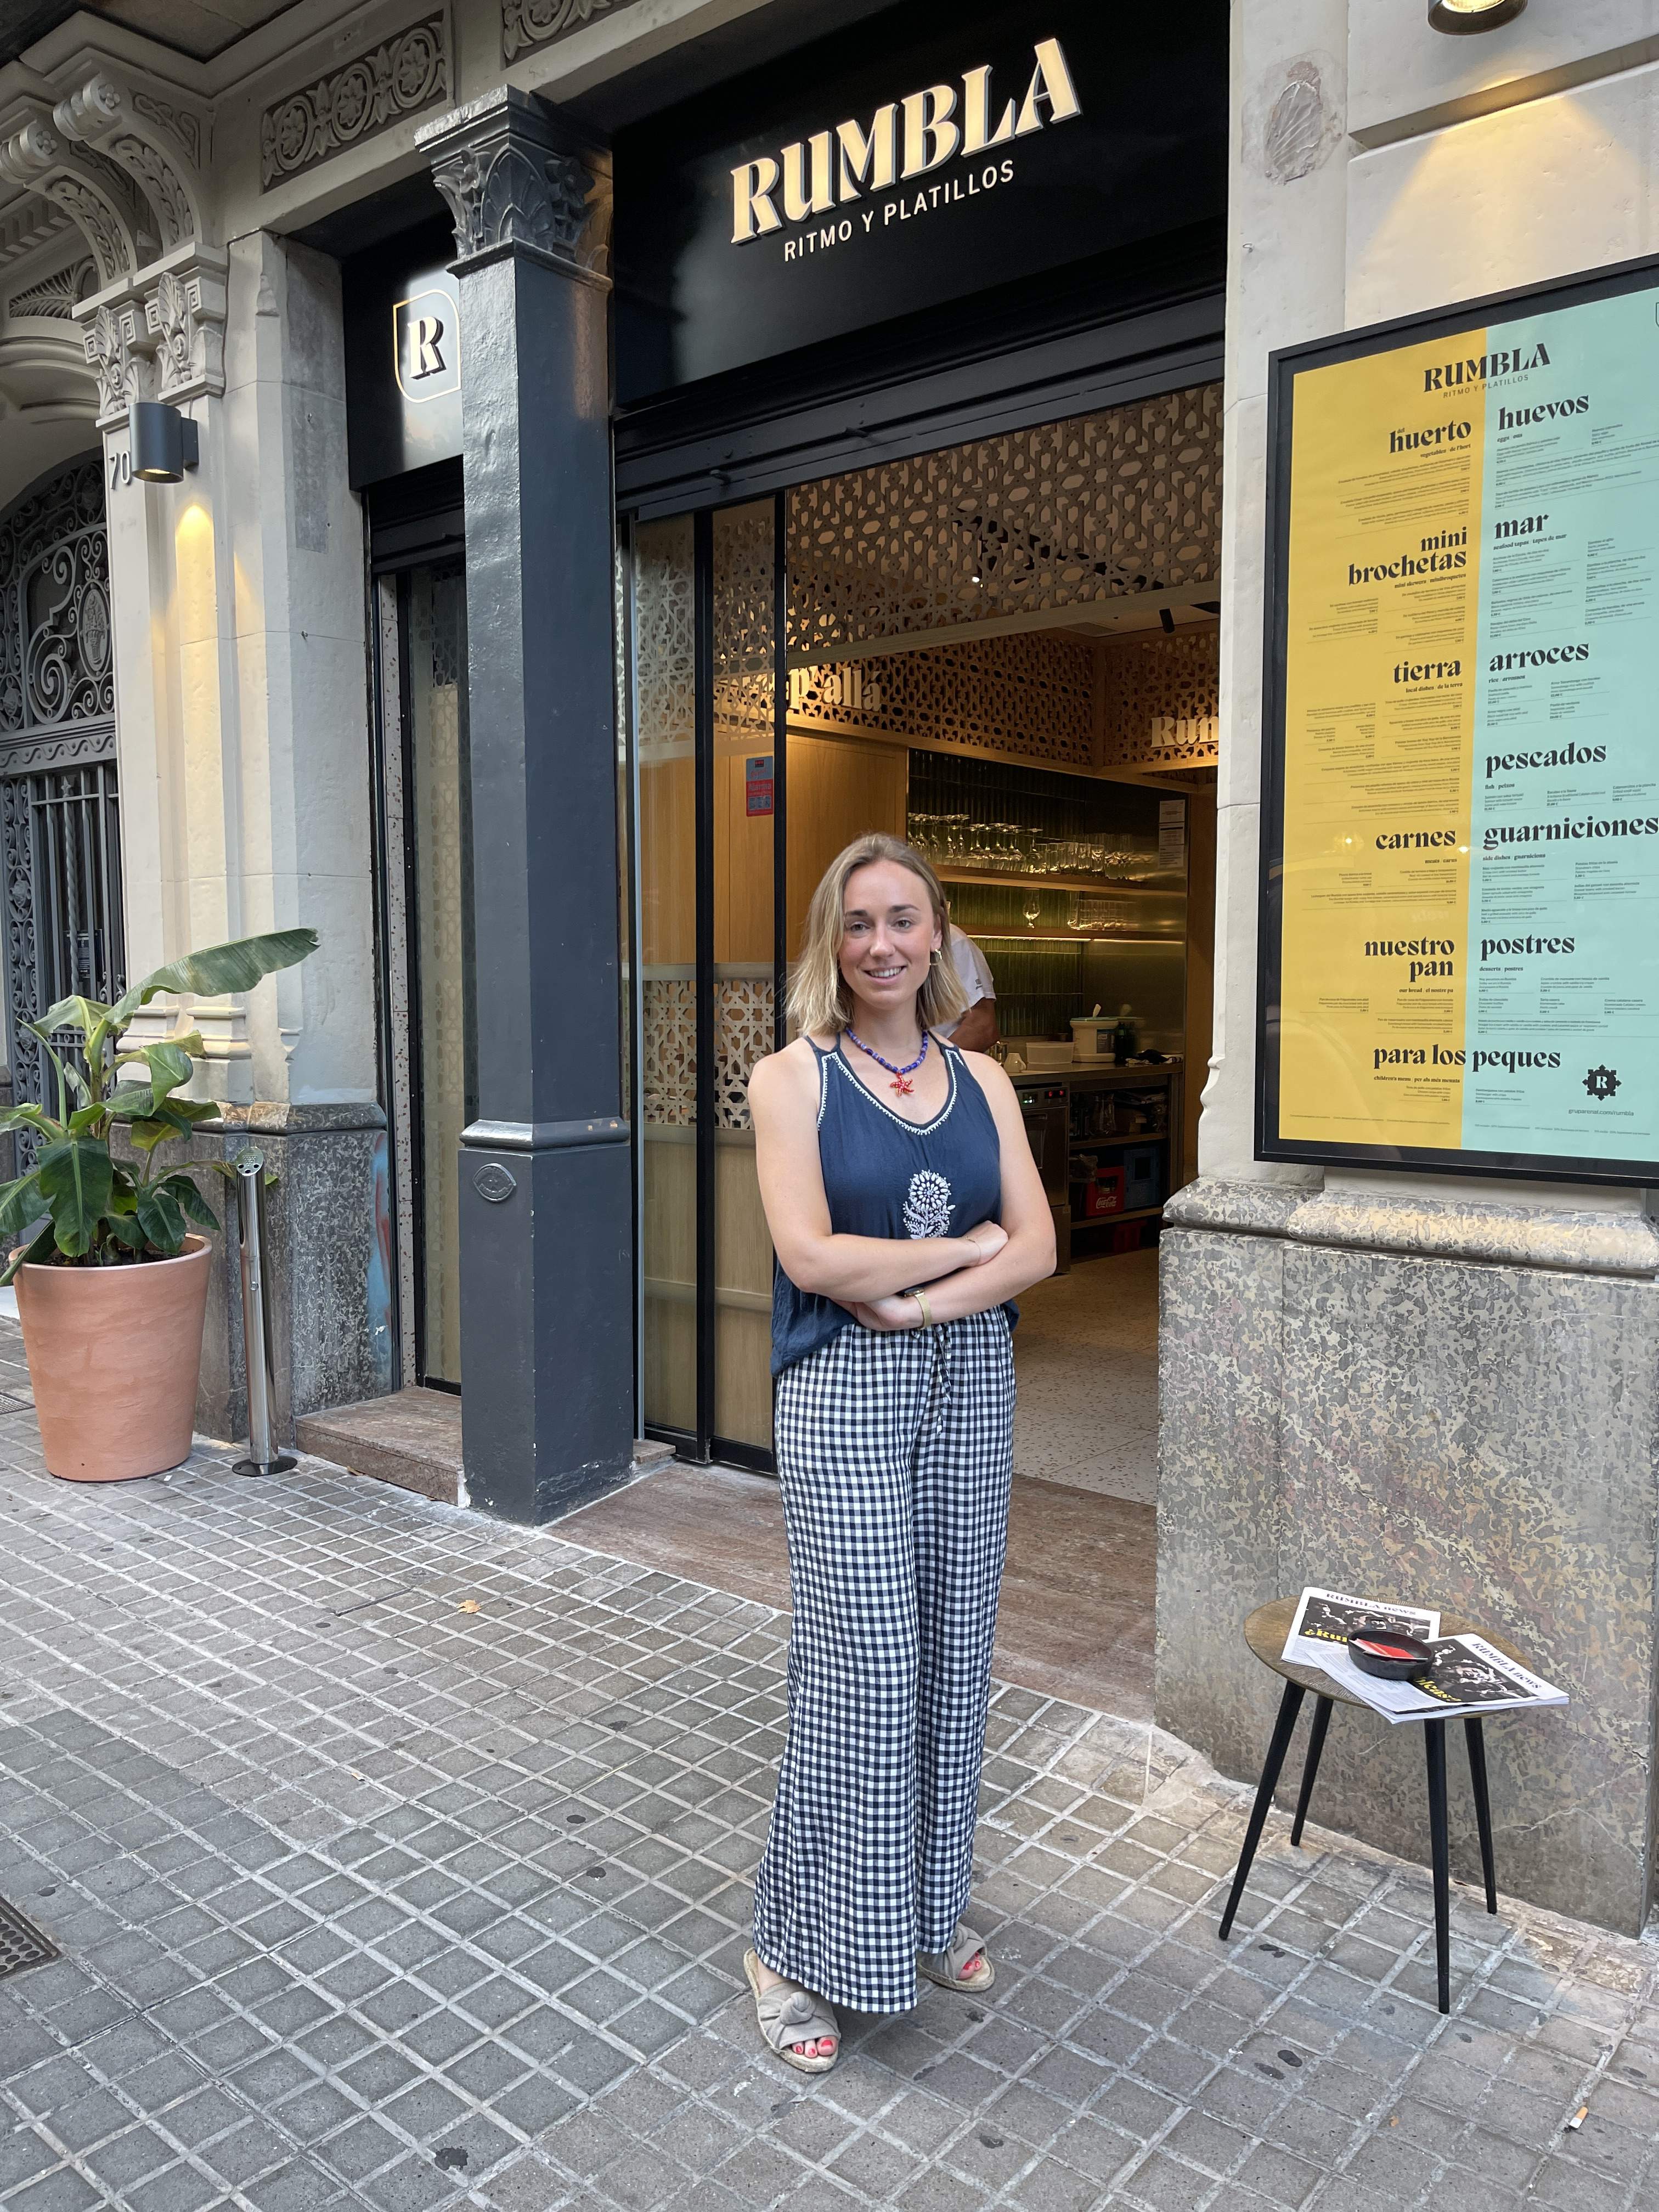 La rumba d'aquest restaurant de Barcelona et farà venir ganes d'enfilar-te a la taula a ballar